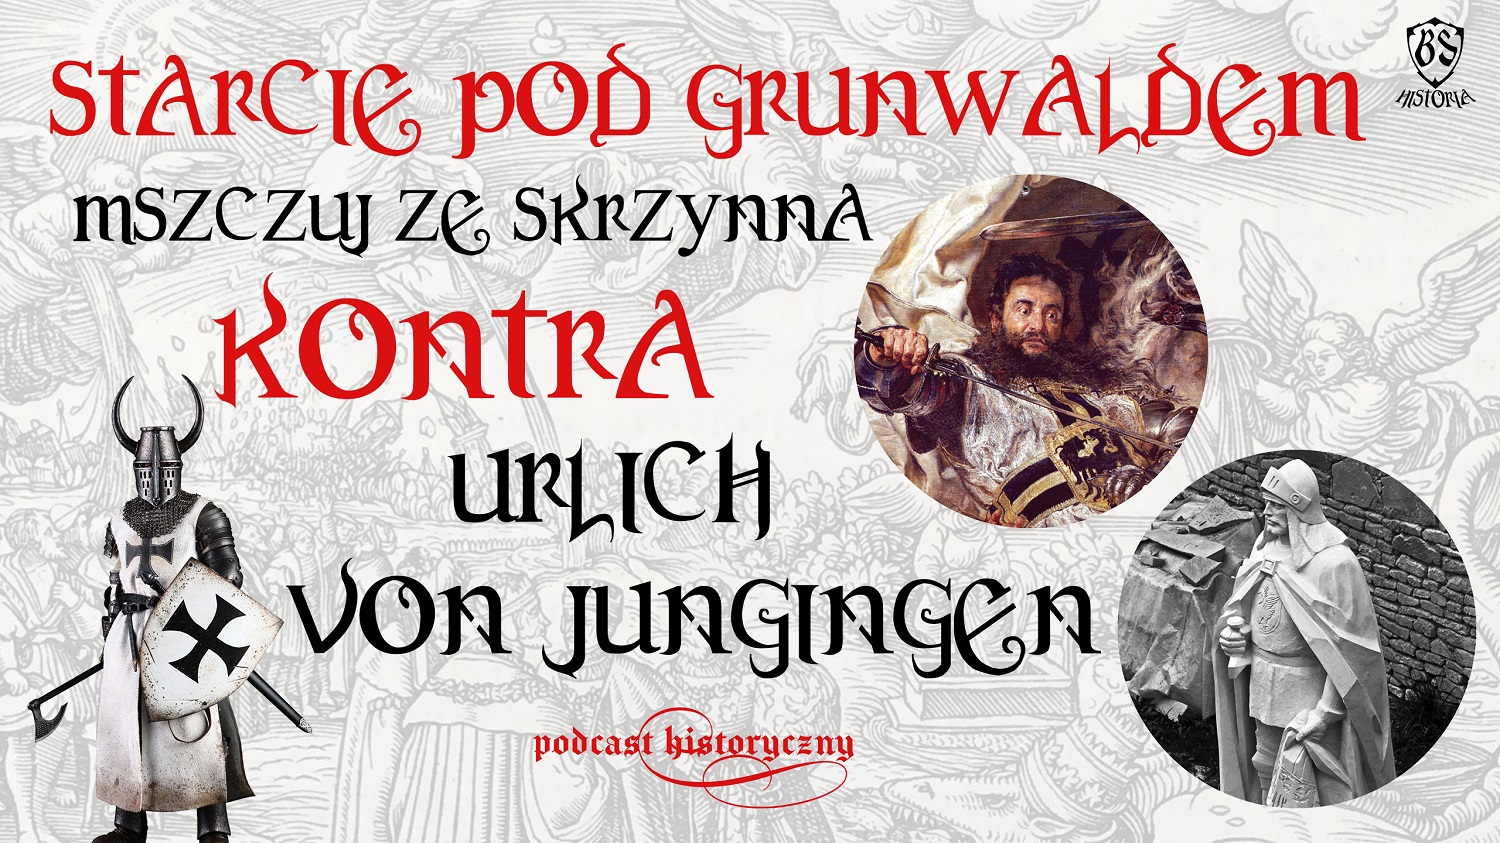 Jak zginął Urlich von Jungingen?